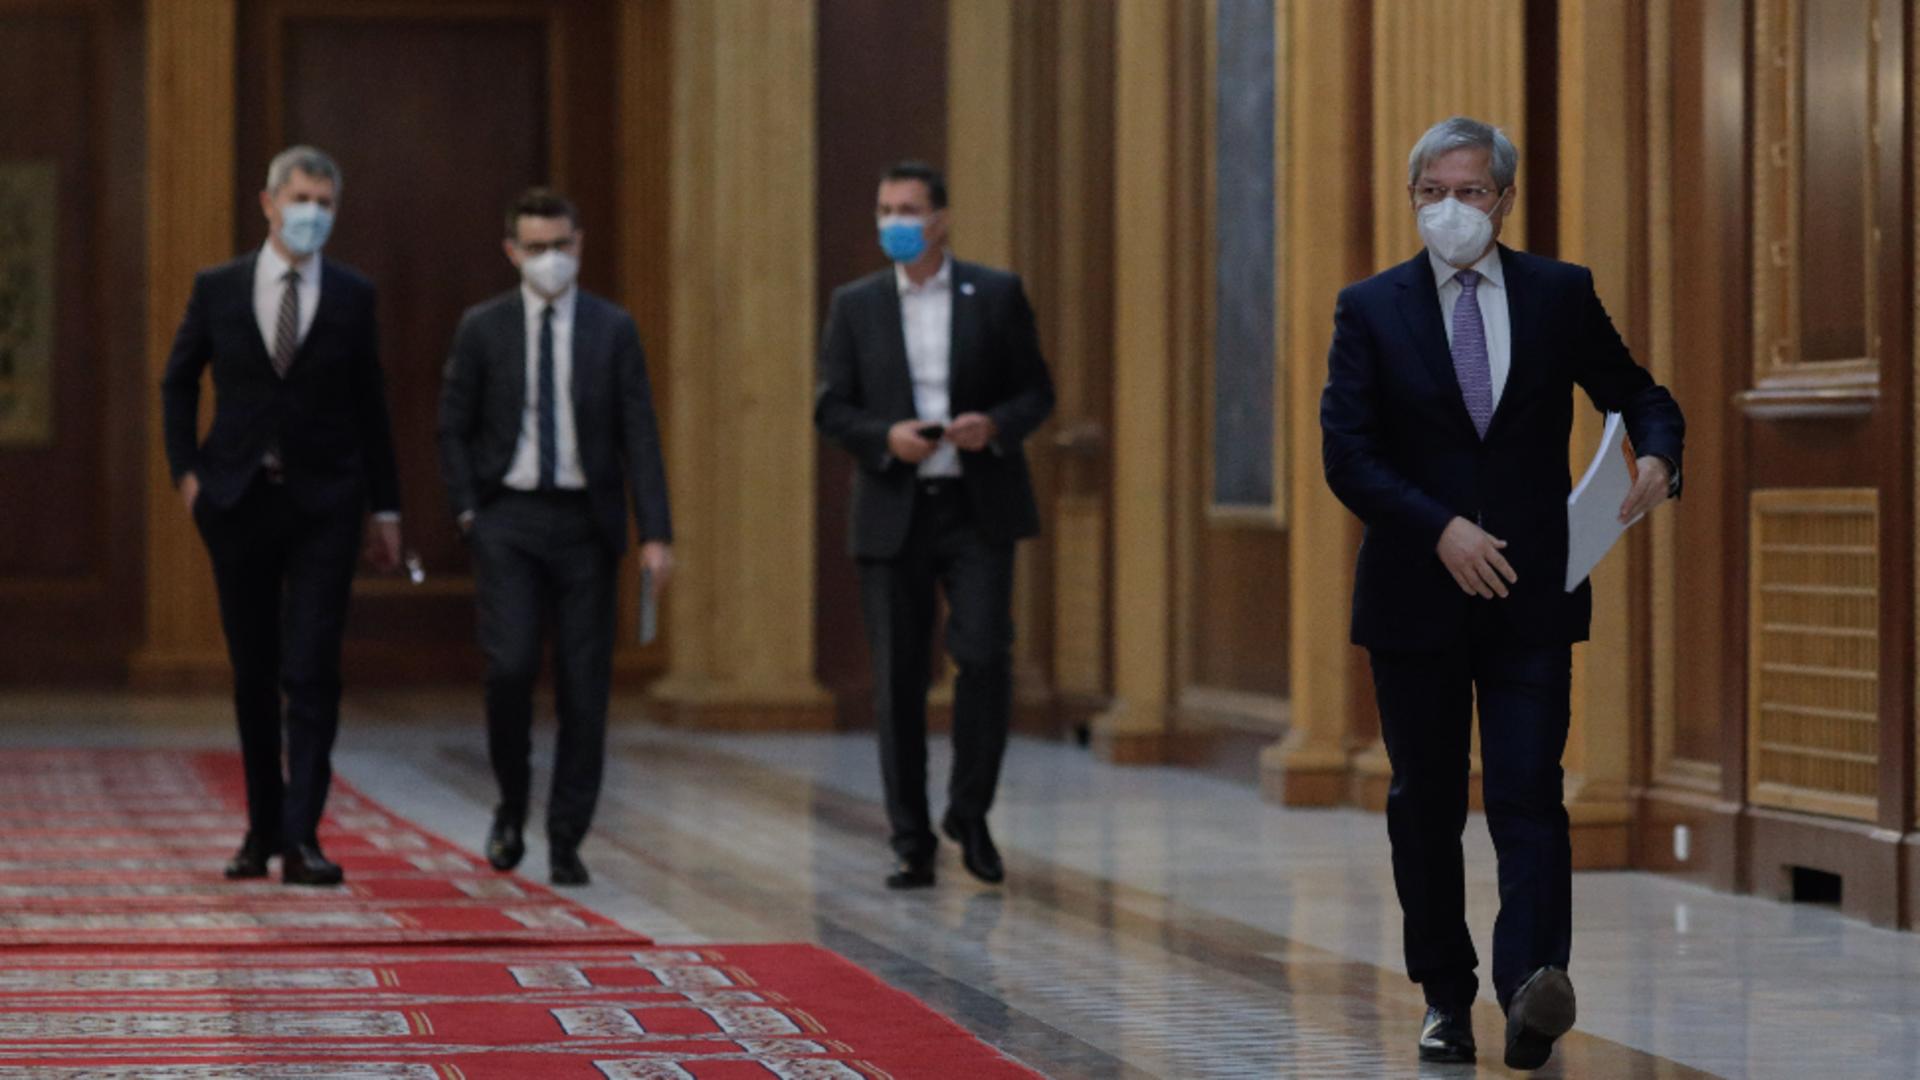 Dacian Cioloș vrea refacerea coaliției cu PNL și UDMR. Foto/Inquam Photo/Octav Ganea